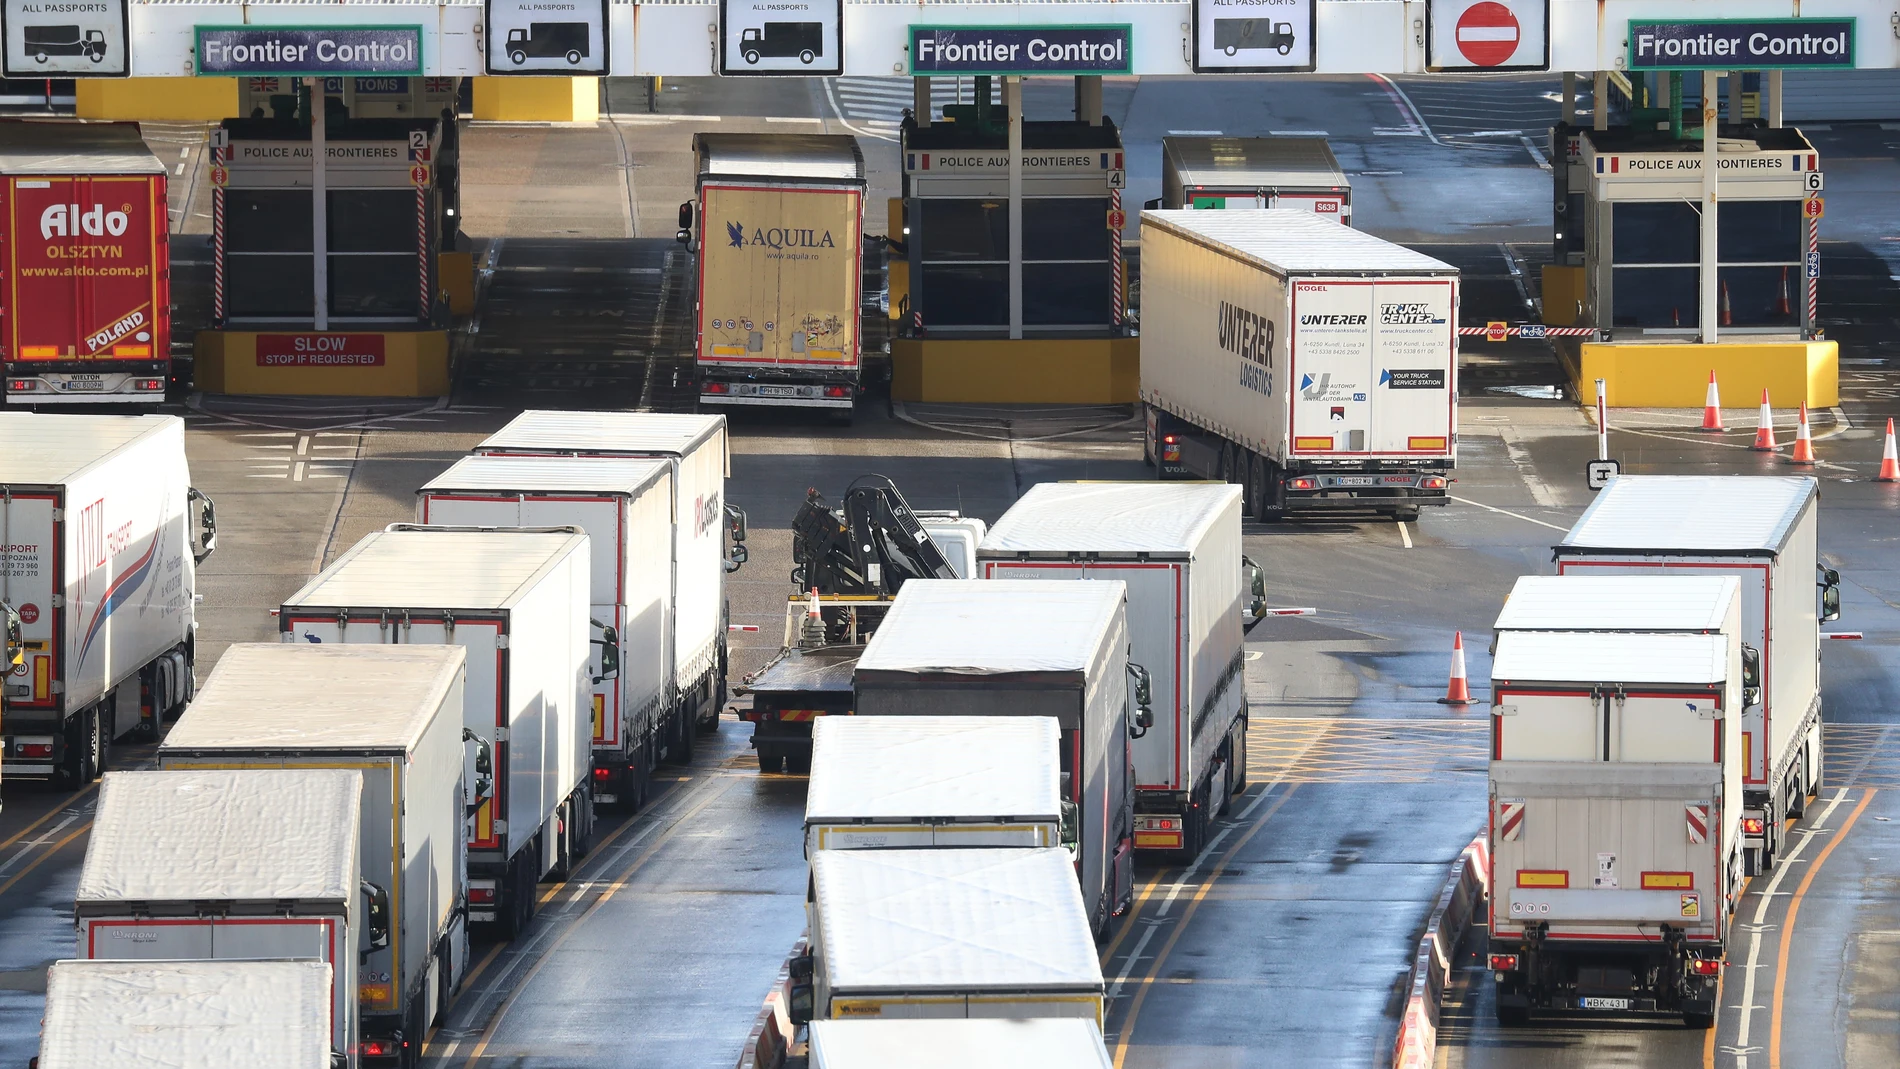 Cola de camiones en el área de control fronterizo en el puerto de Dover en Kent